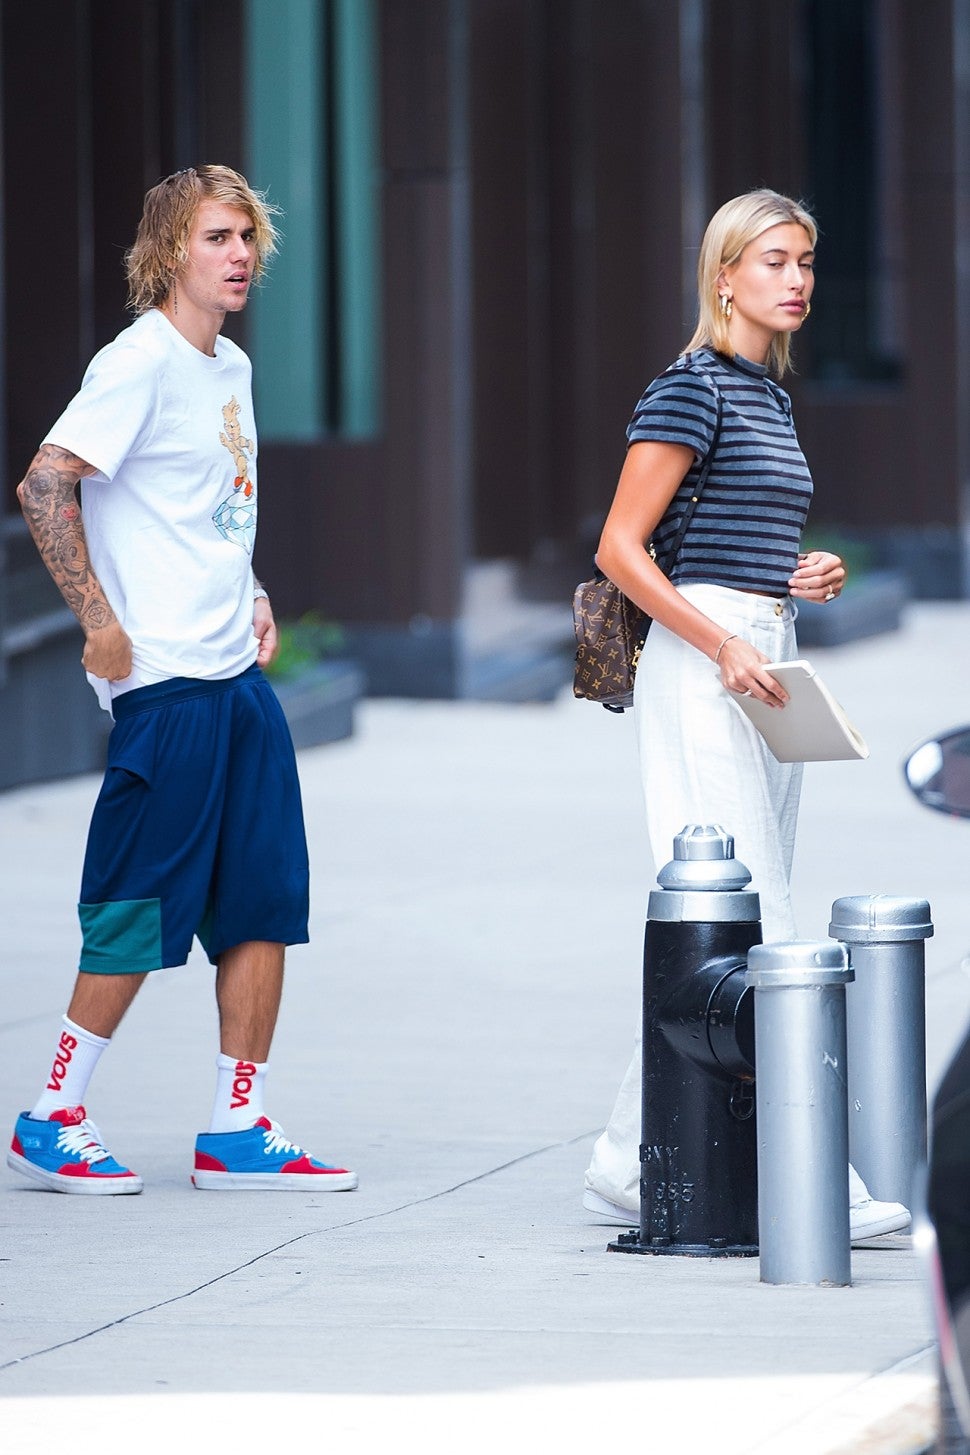 Justin Bieber and Hailey Baldwin